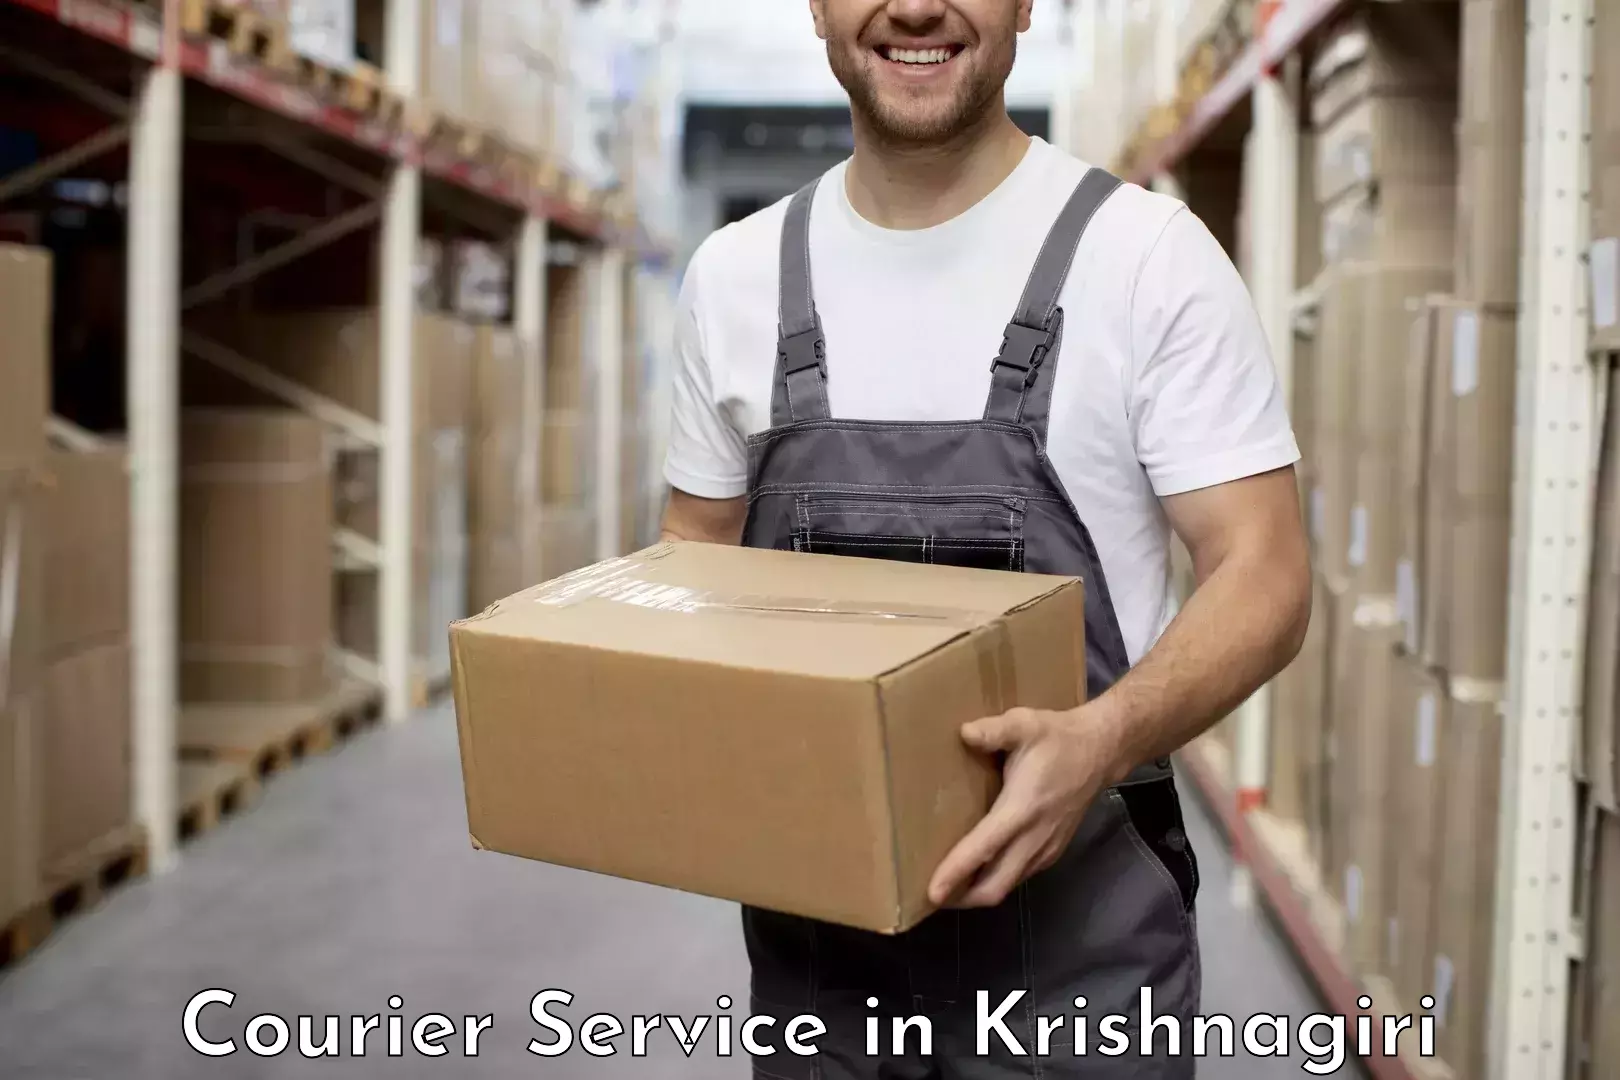 Efficient parcel transport in Krishnagiri